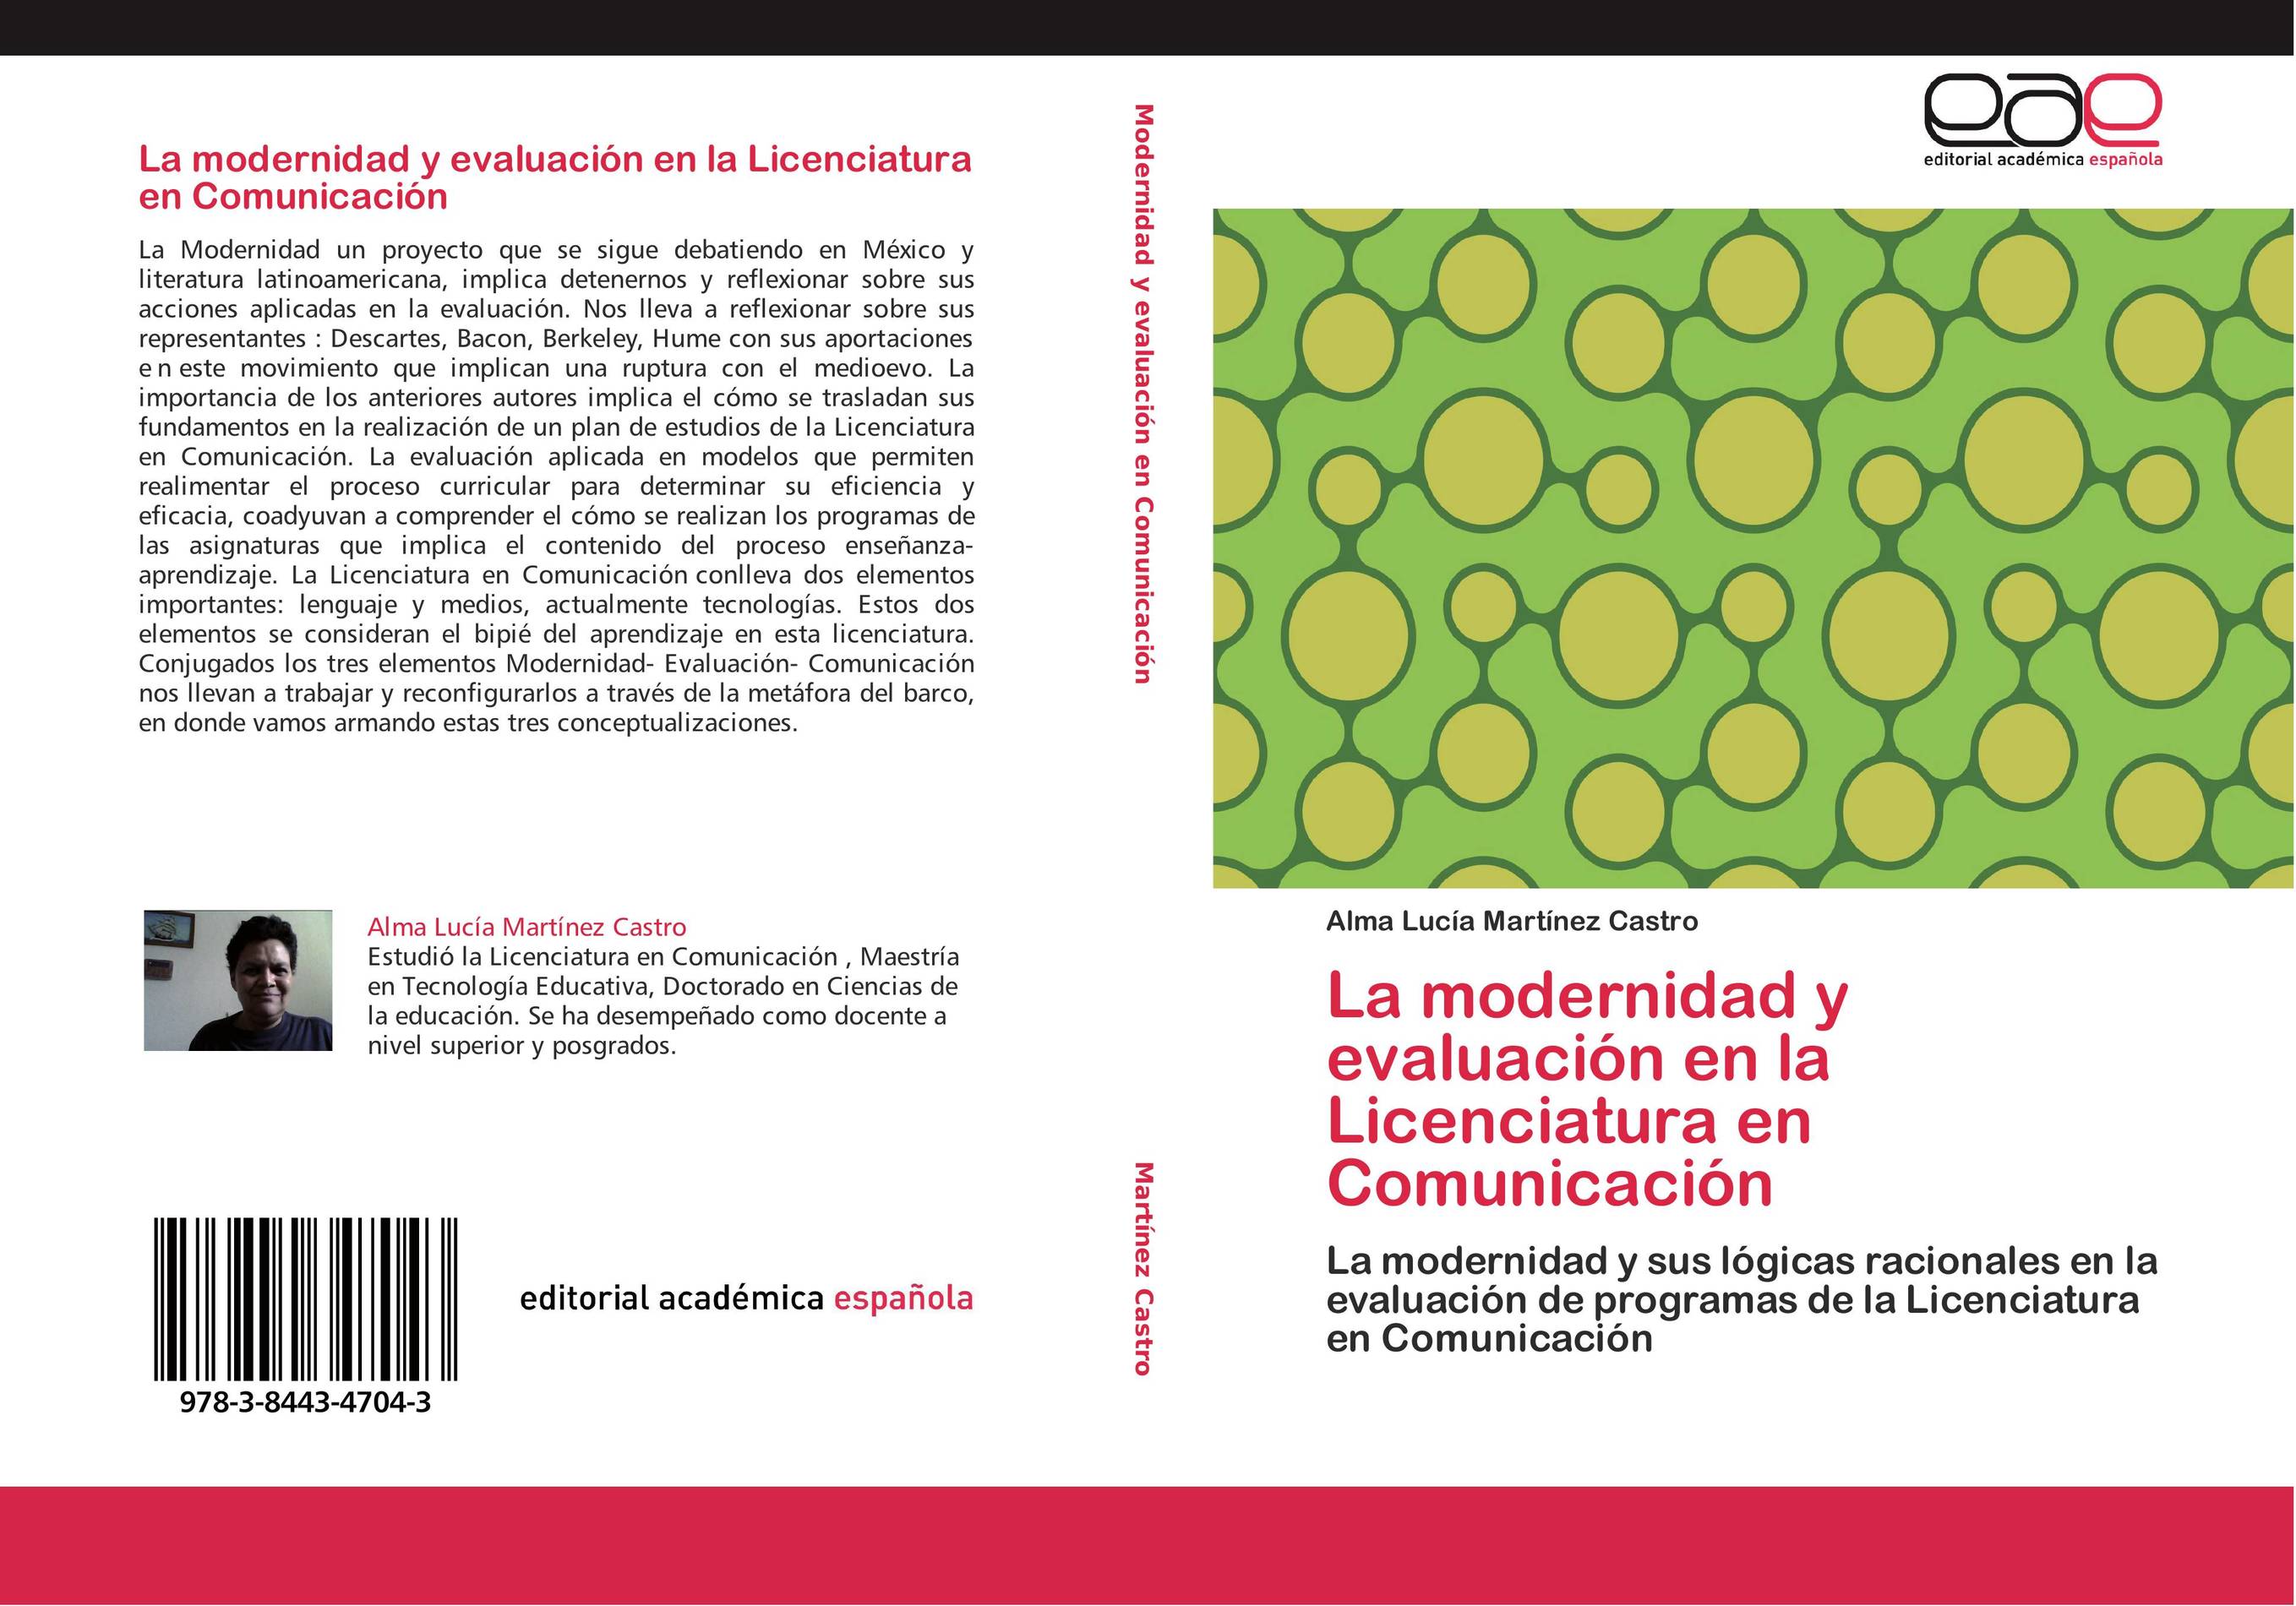 La modernidad y evaluación en la Licenciatura en Comunicación